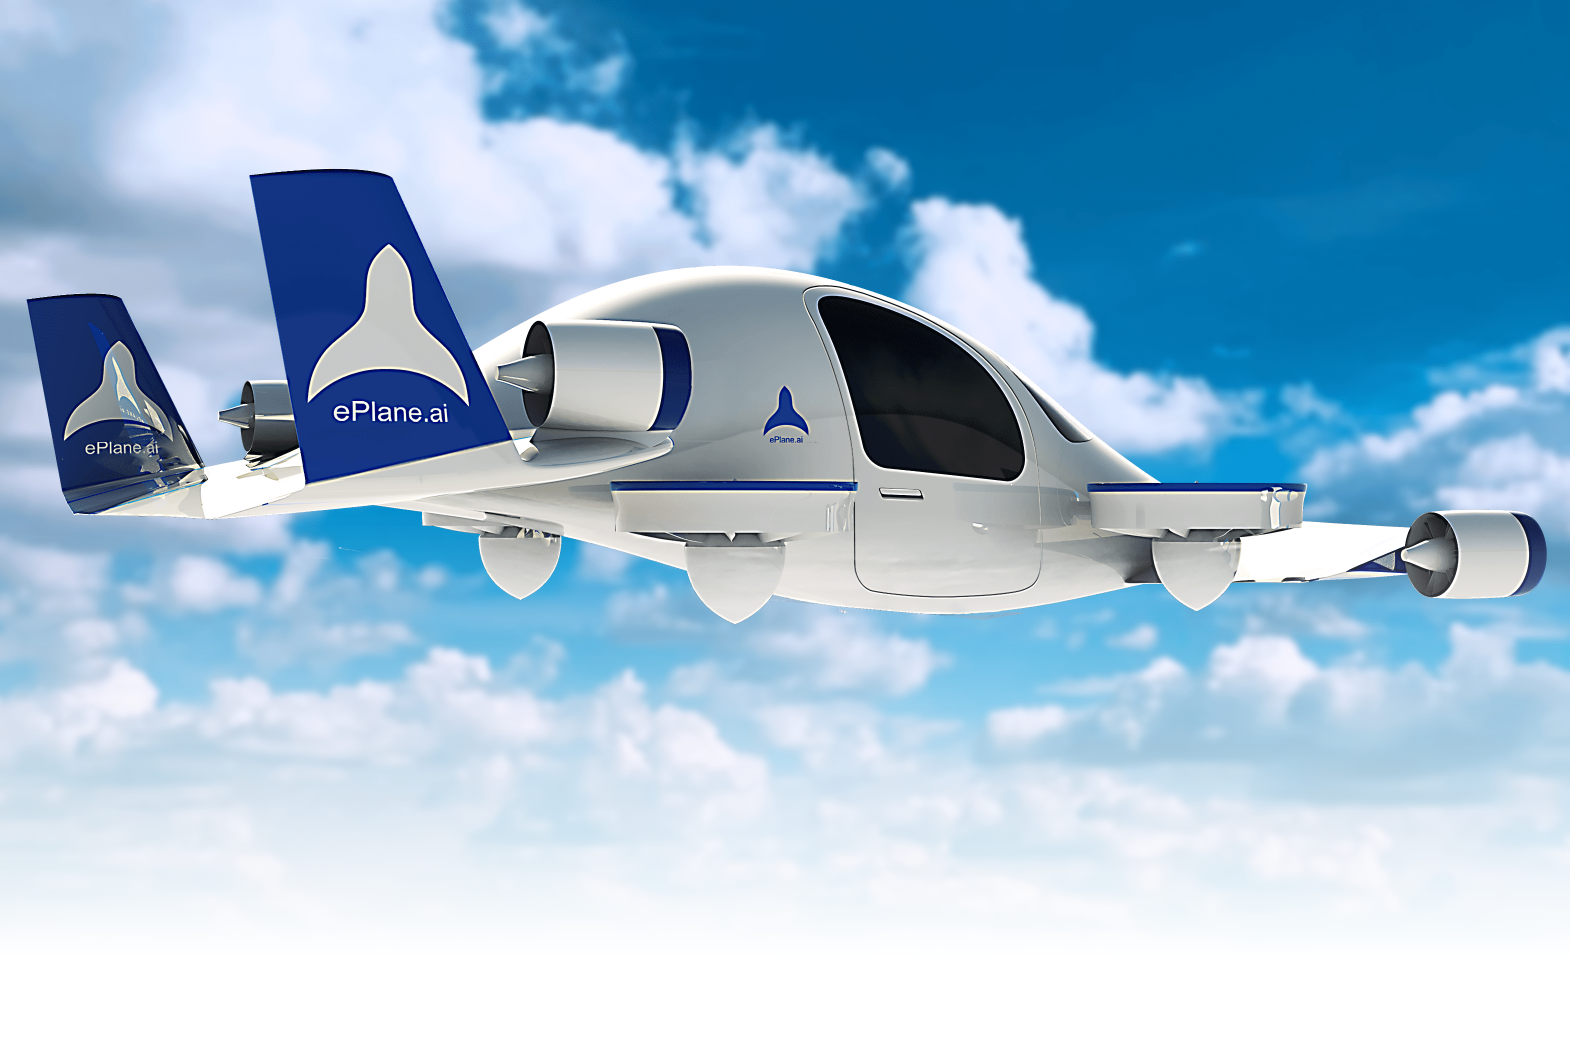 Der Gründer von ePlane sagte, dass das Unternehmen plant, den ersten Prototyp des Lufttaxis bis Ende 2024 auf den Markt zu bringen und 2027 mit der Kommerzialisierung im großen Stil in Indien zu beginnen.